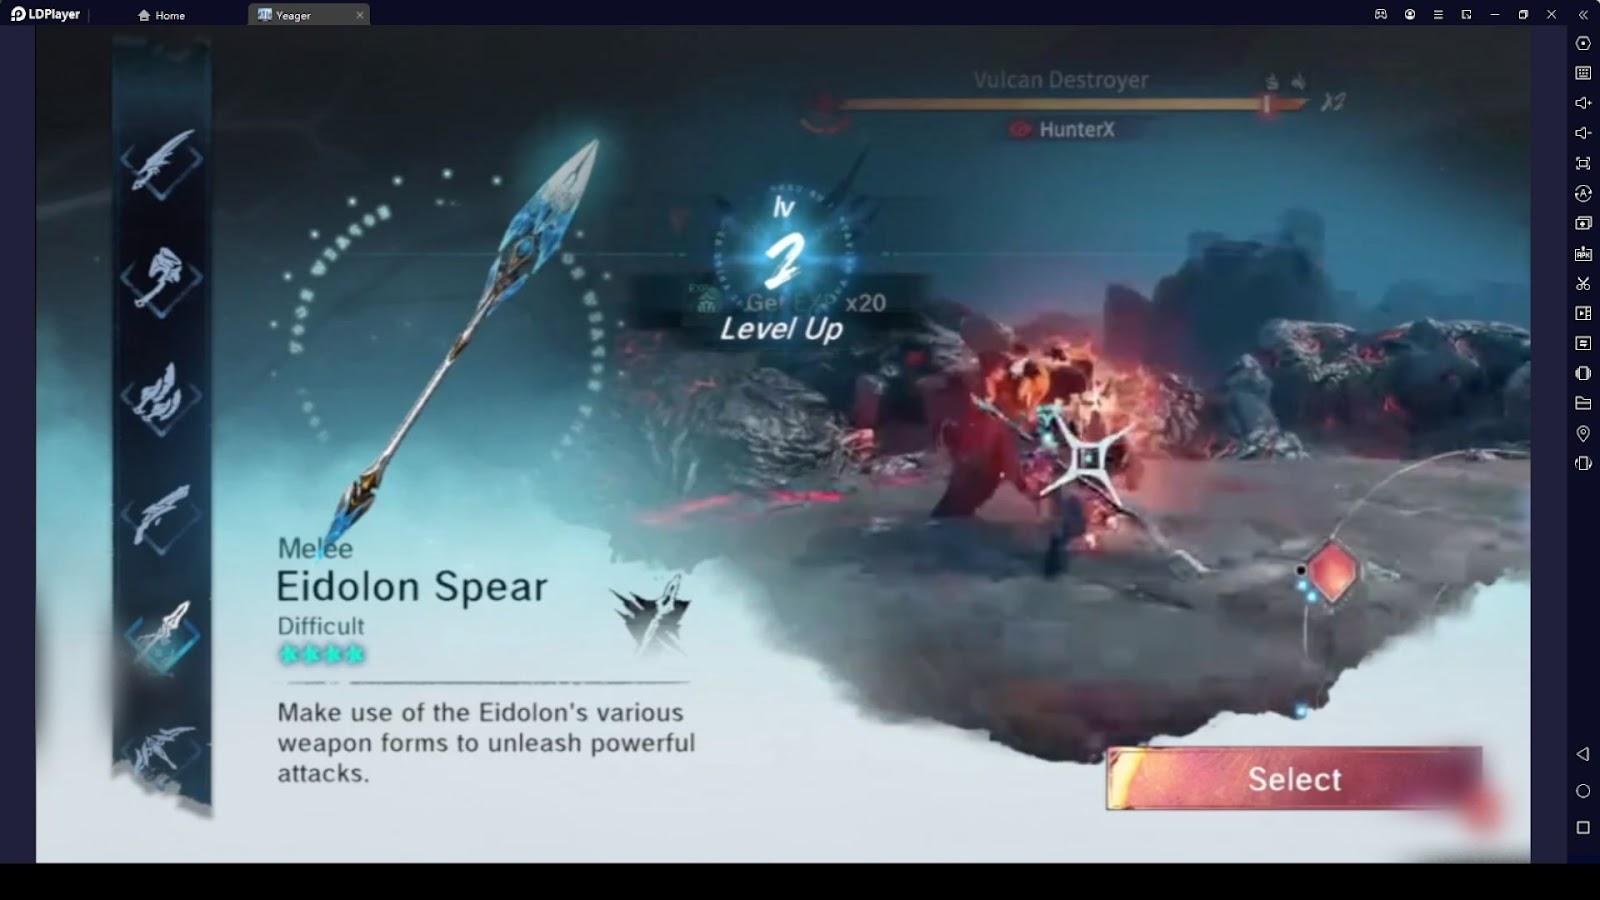 Eidolon Spear